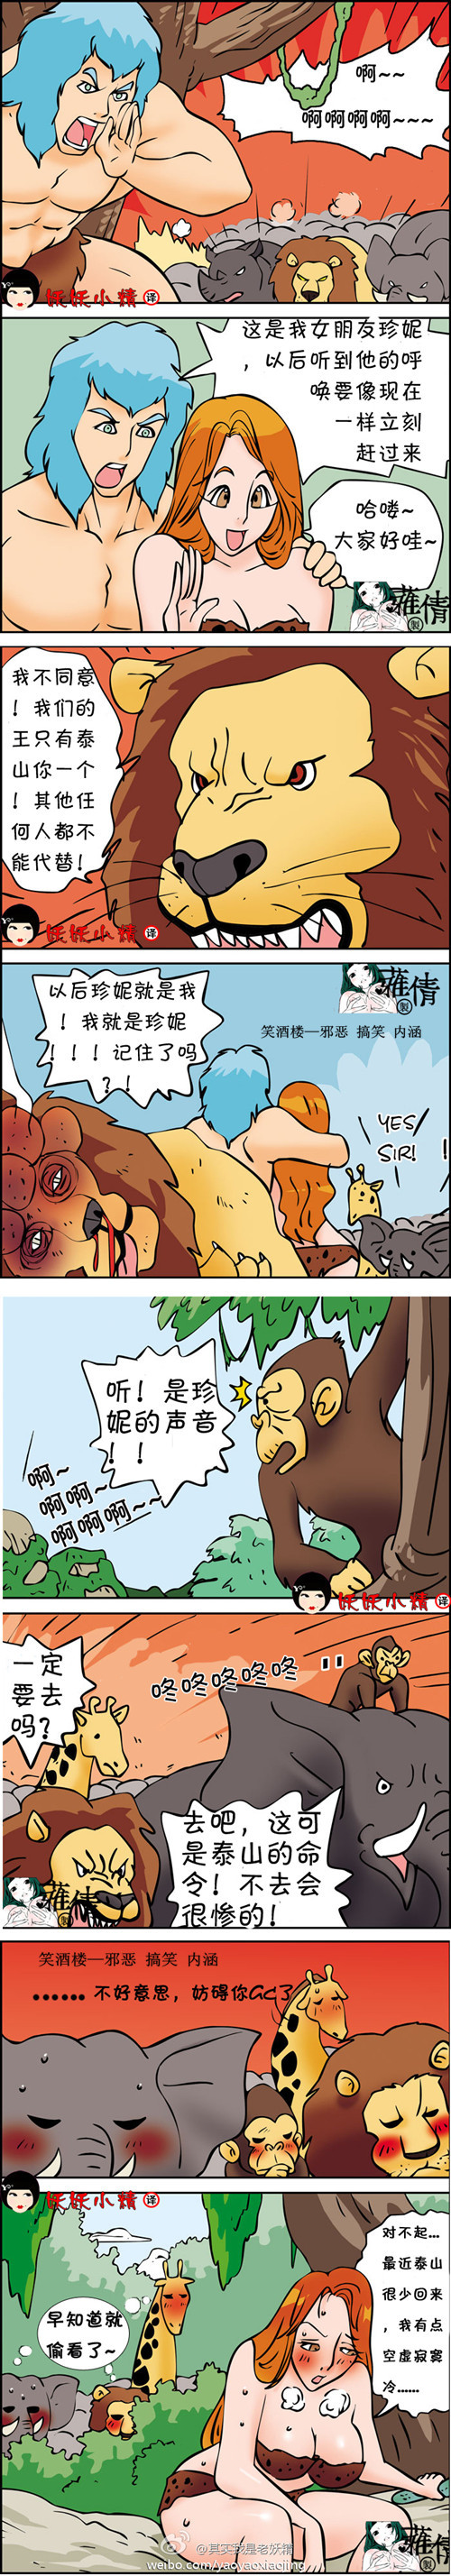 污漫画|人猿泰山，连动物也邪恶了